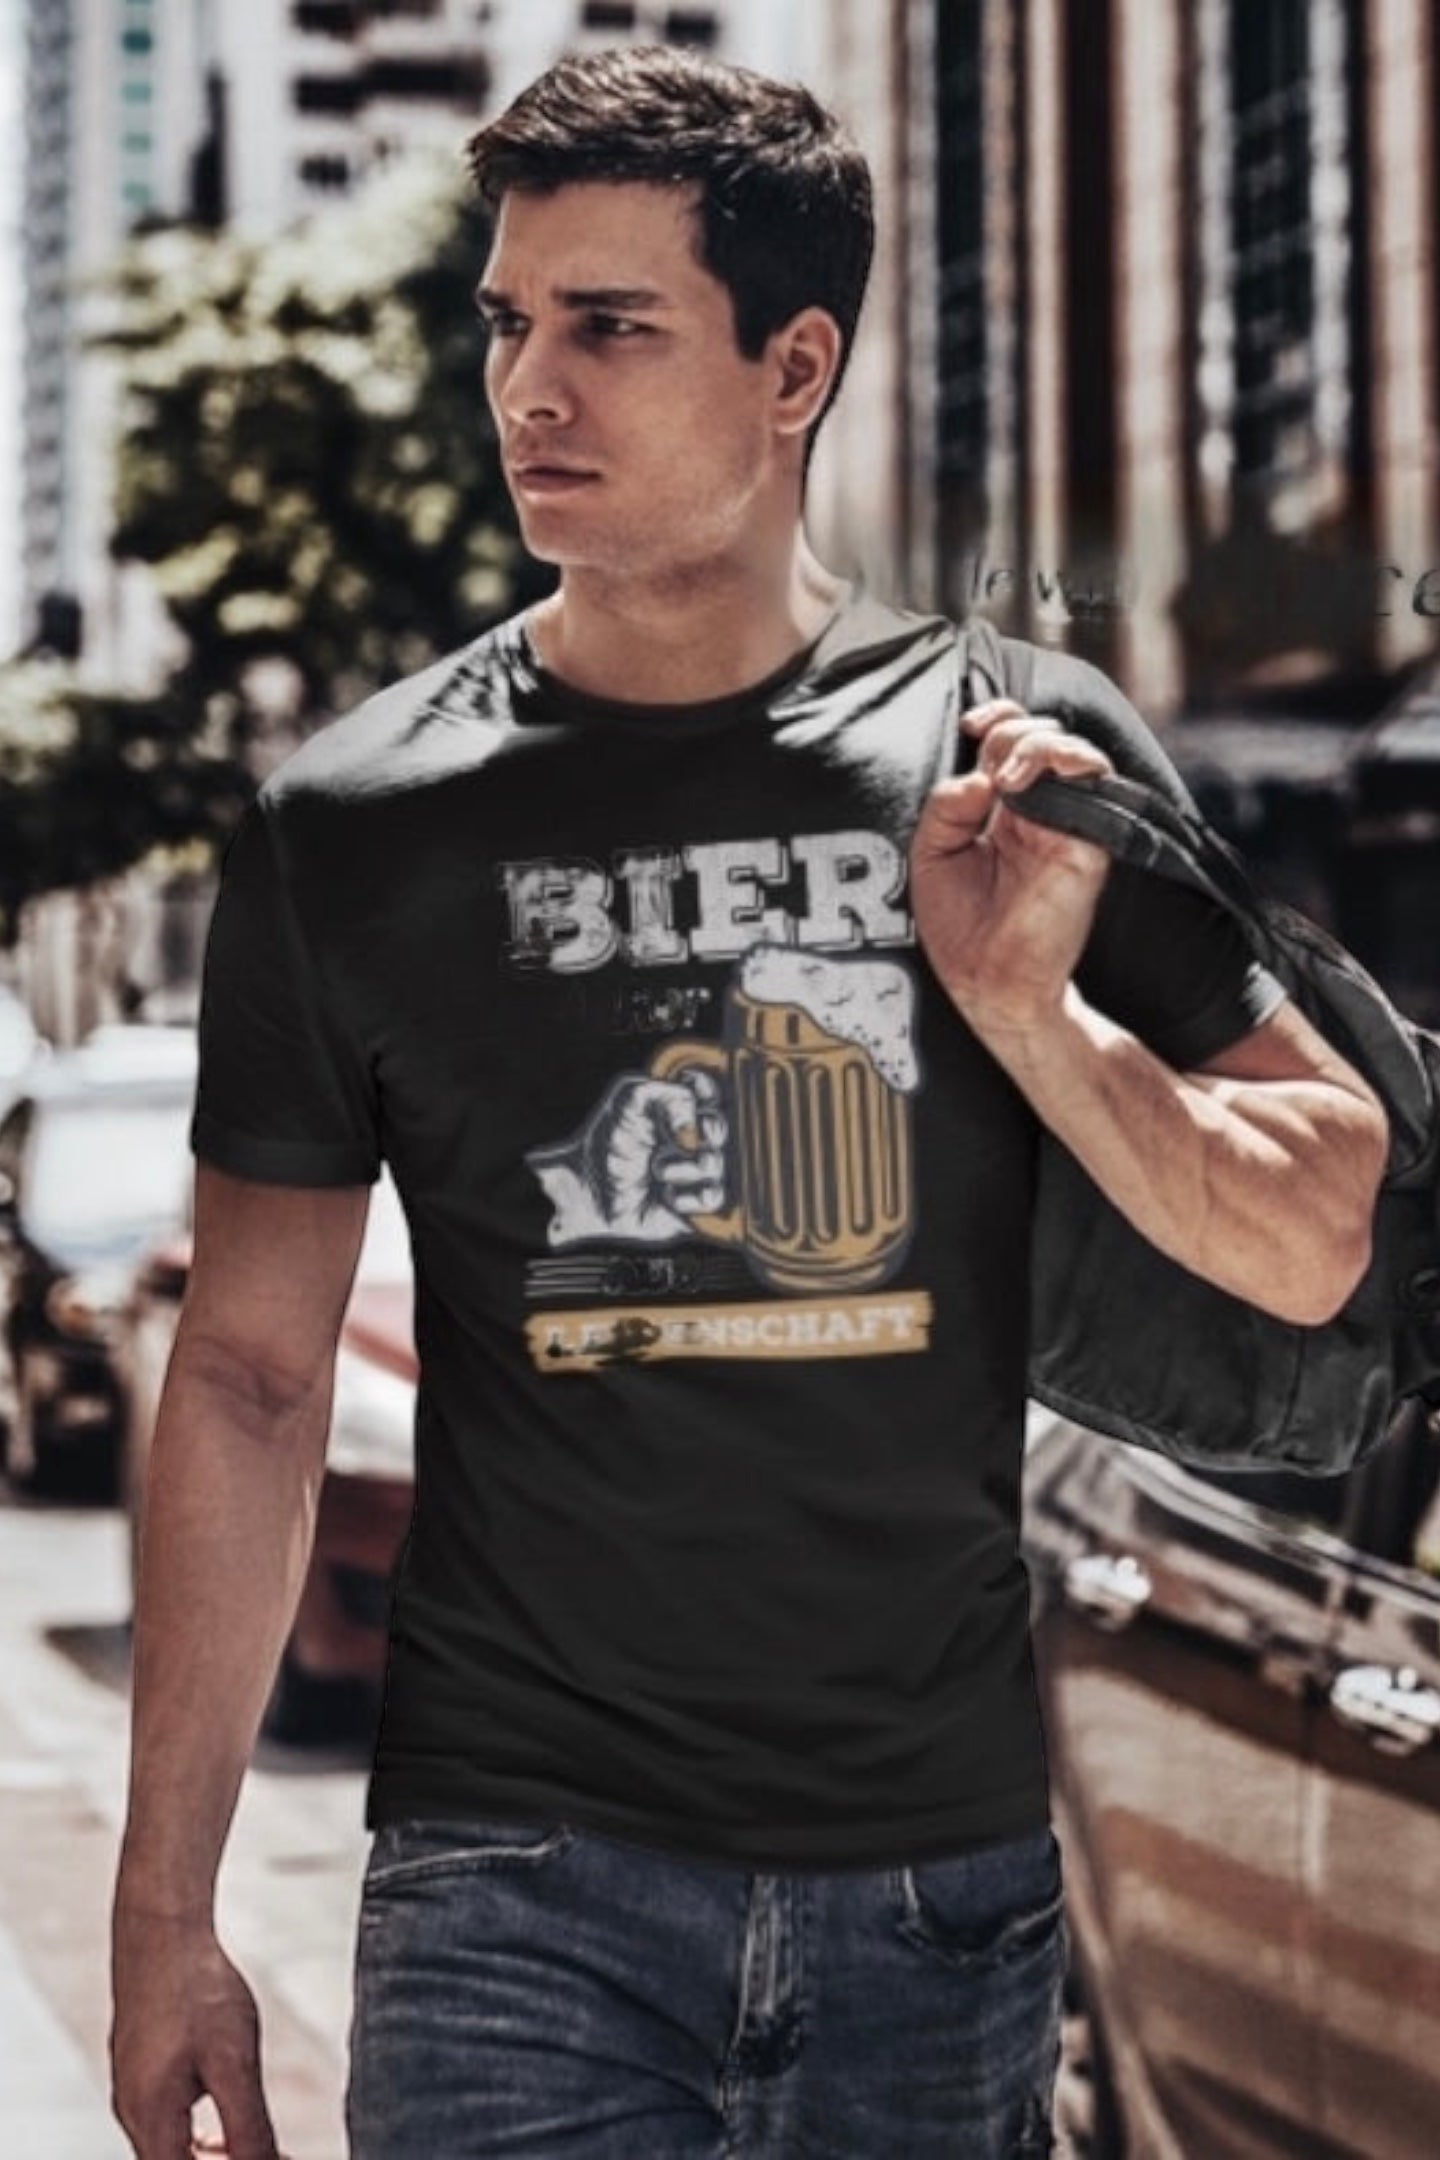 T-Shirt | Biertrinker aus Leidenschaft